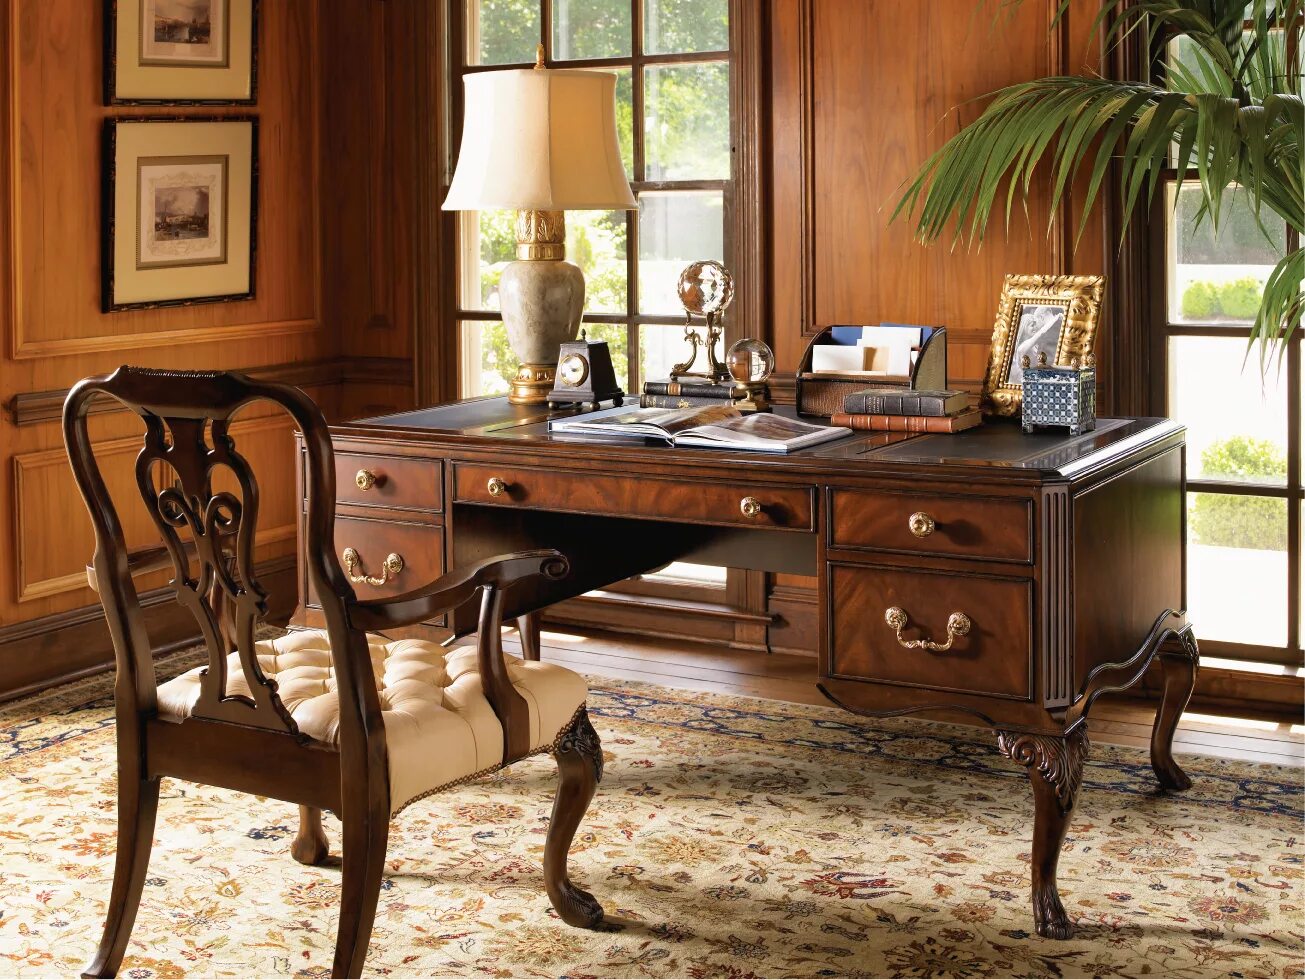 Стол письменный Royal Classical writing Desk le Home 5632/6400. Кабинет в стиле Ампир 19 века. Стол для кабинета домашнего. Стол классический.